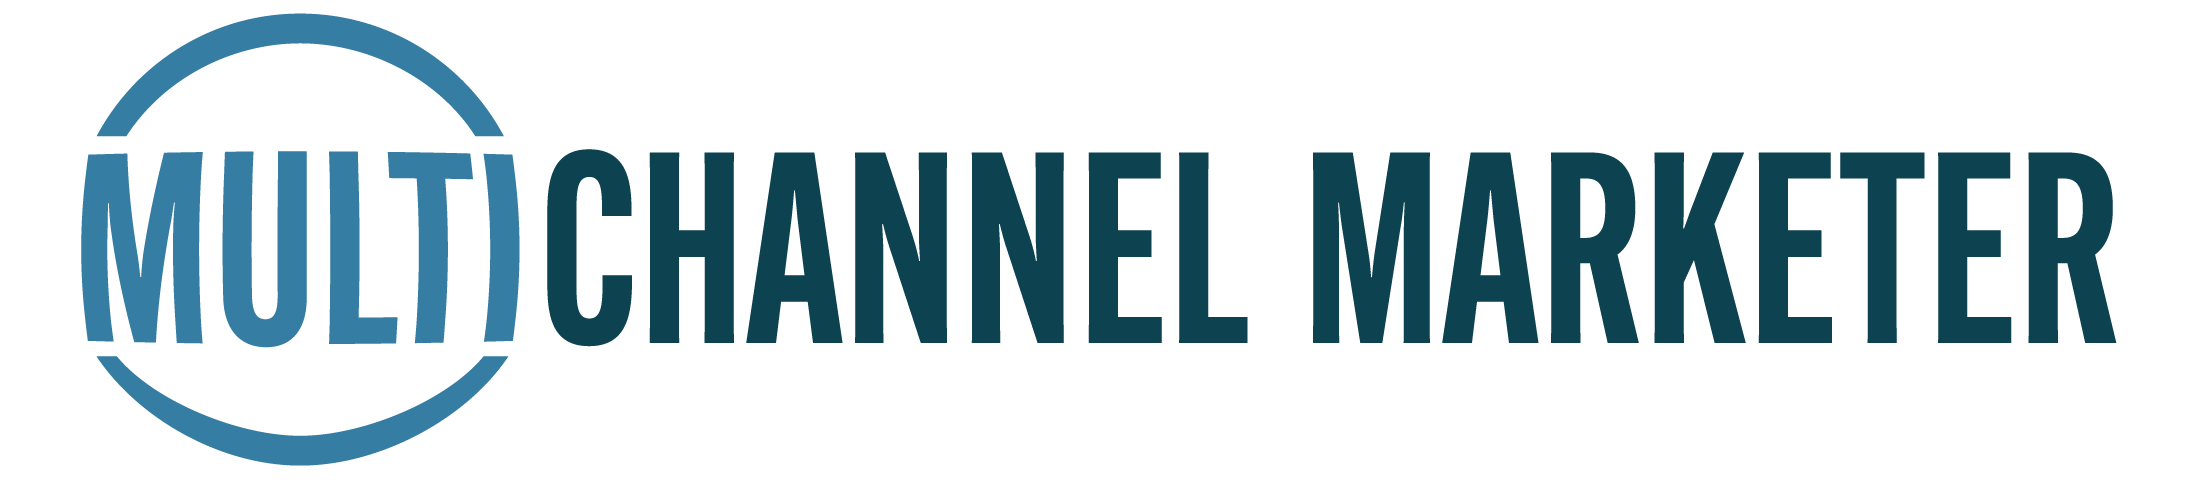 Multichannel Marketer Logo